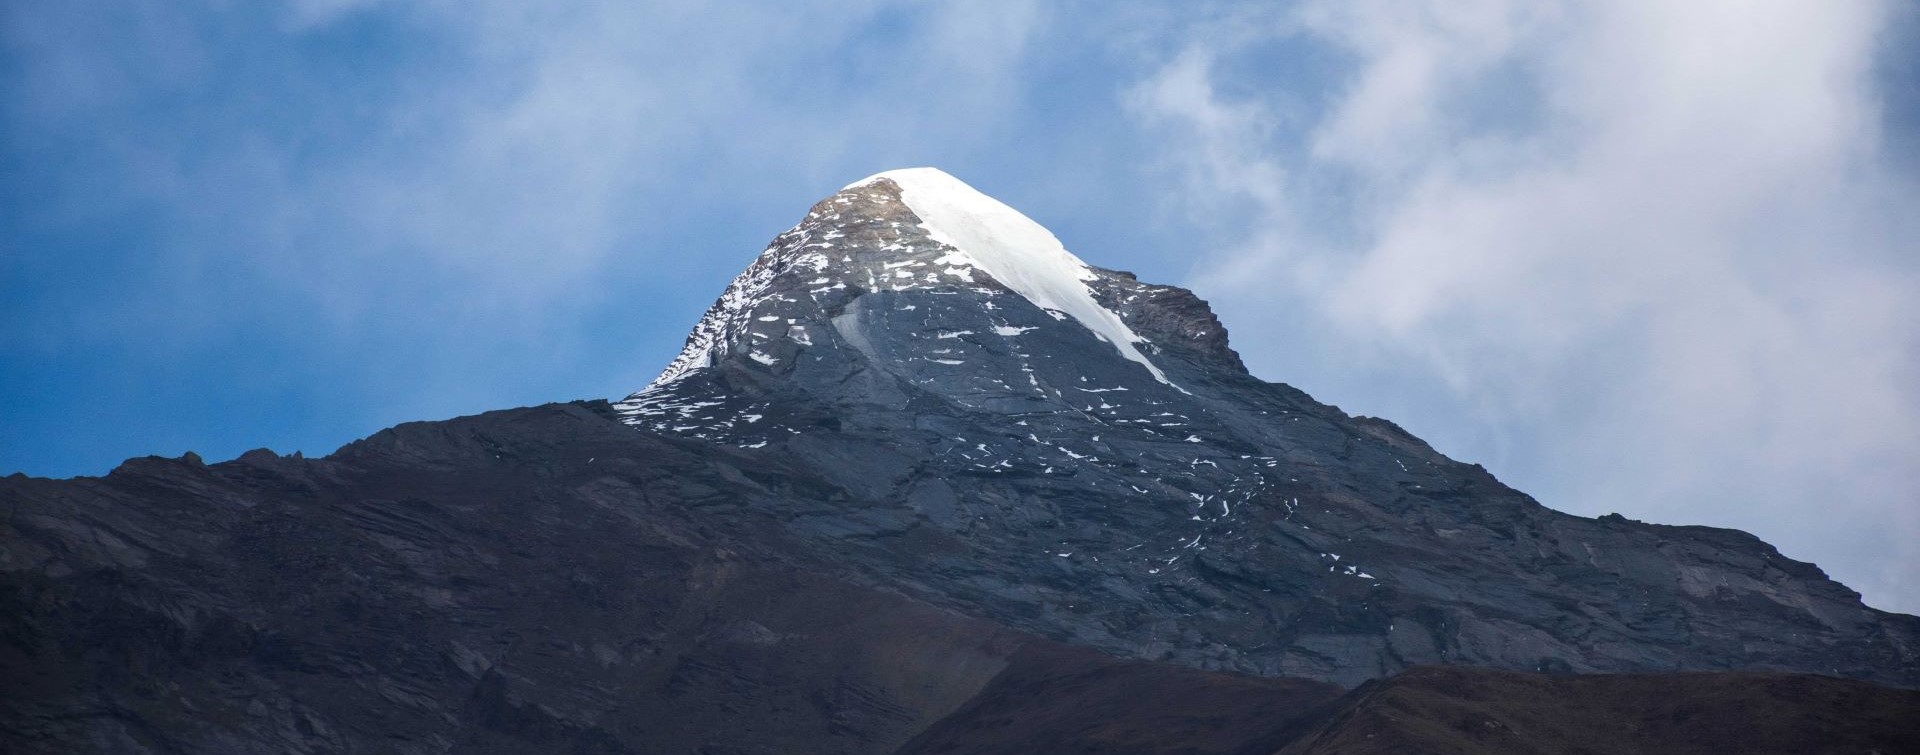 Pishang Peak 